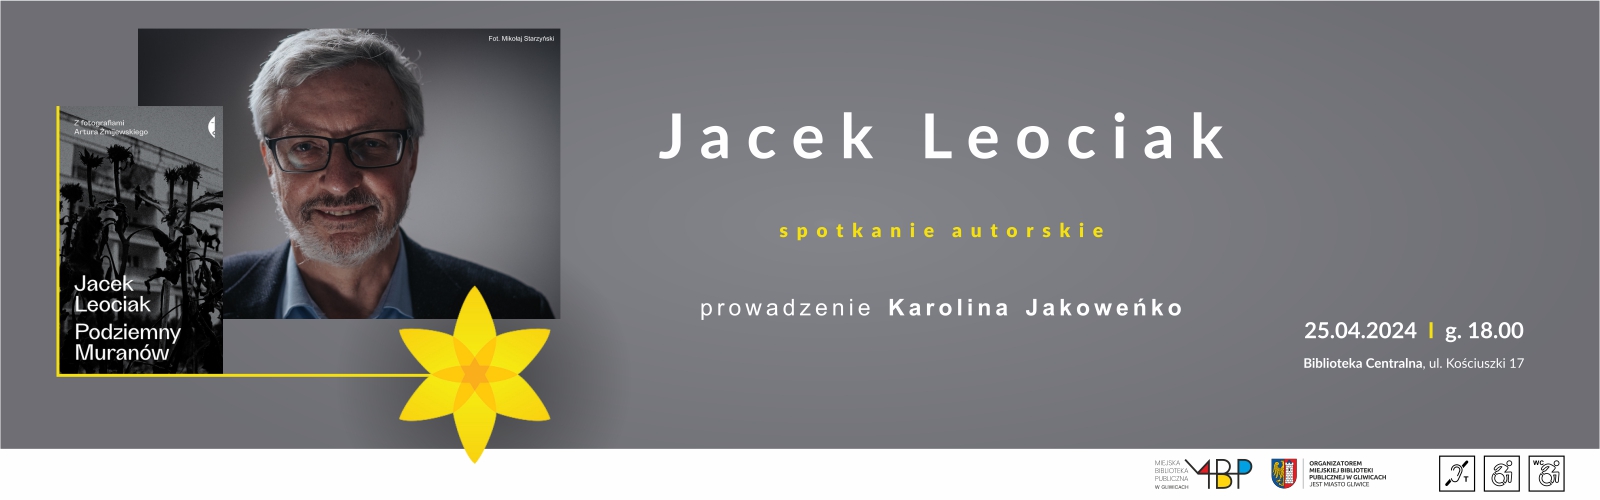 Jacek Leociak – spotkanie autorskie